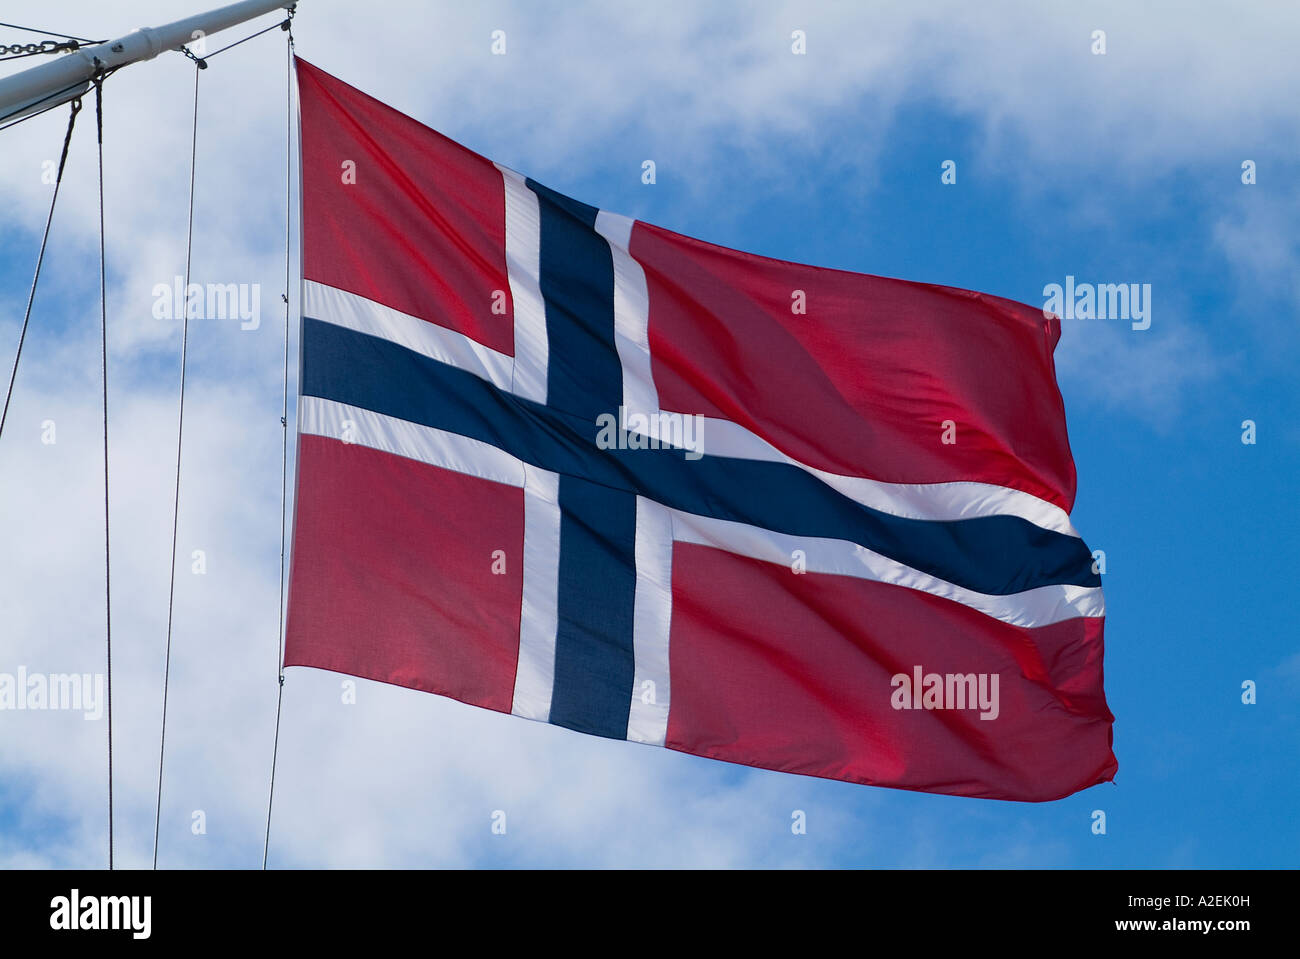 dh bandiera norvegese BANDIERA NORVEGIA sfondo rosso con croce bianca e blu insegne a bordo nave a vela volare nazione colori bandiere navi Foto Stock